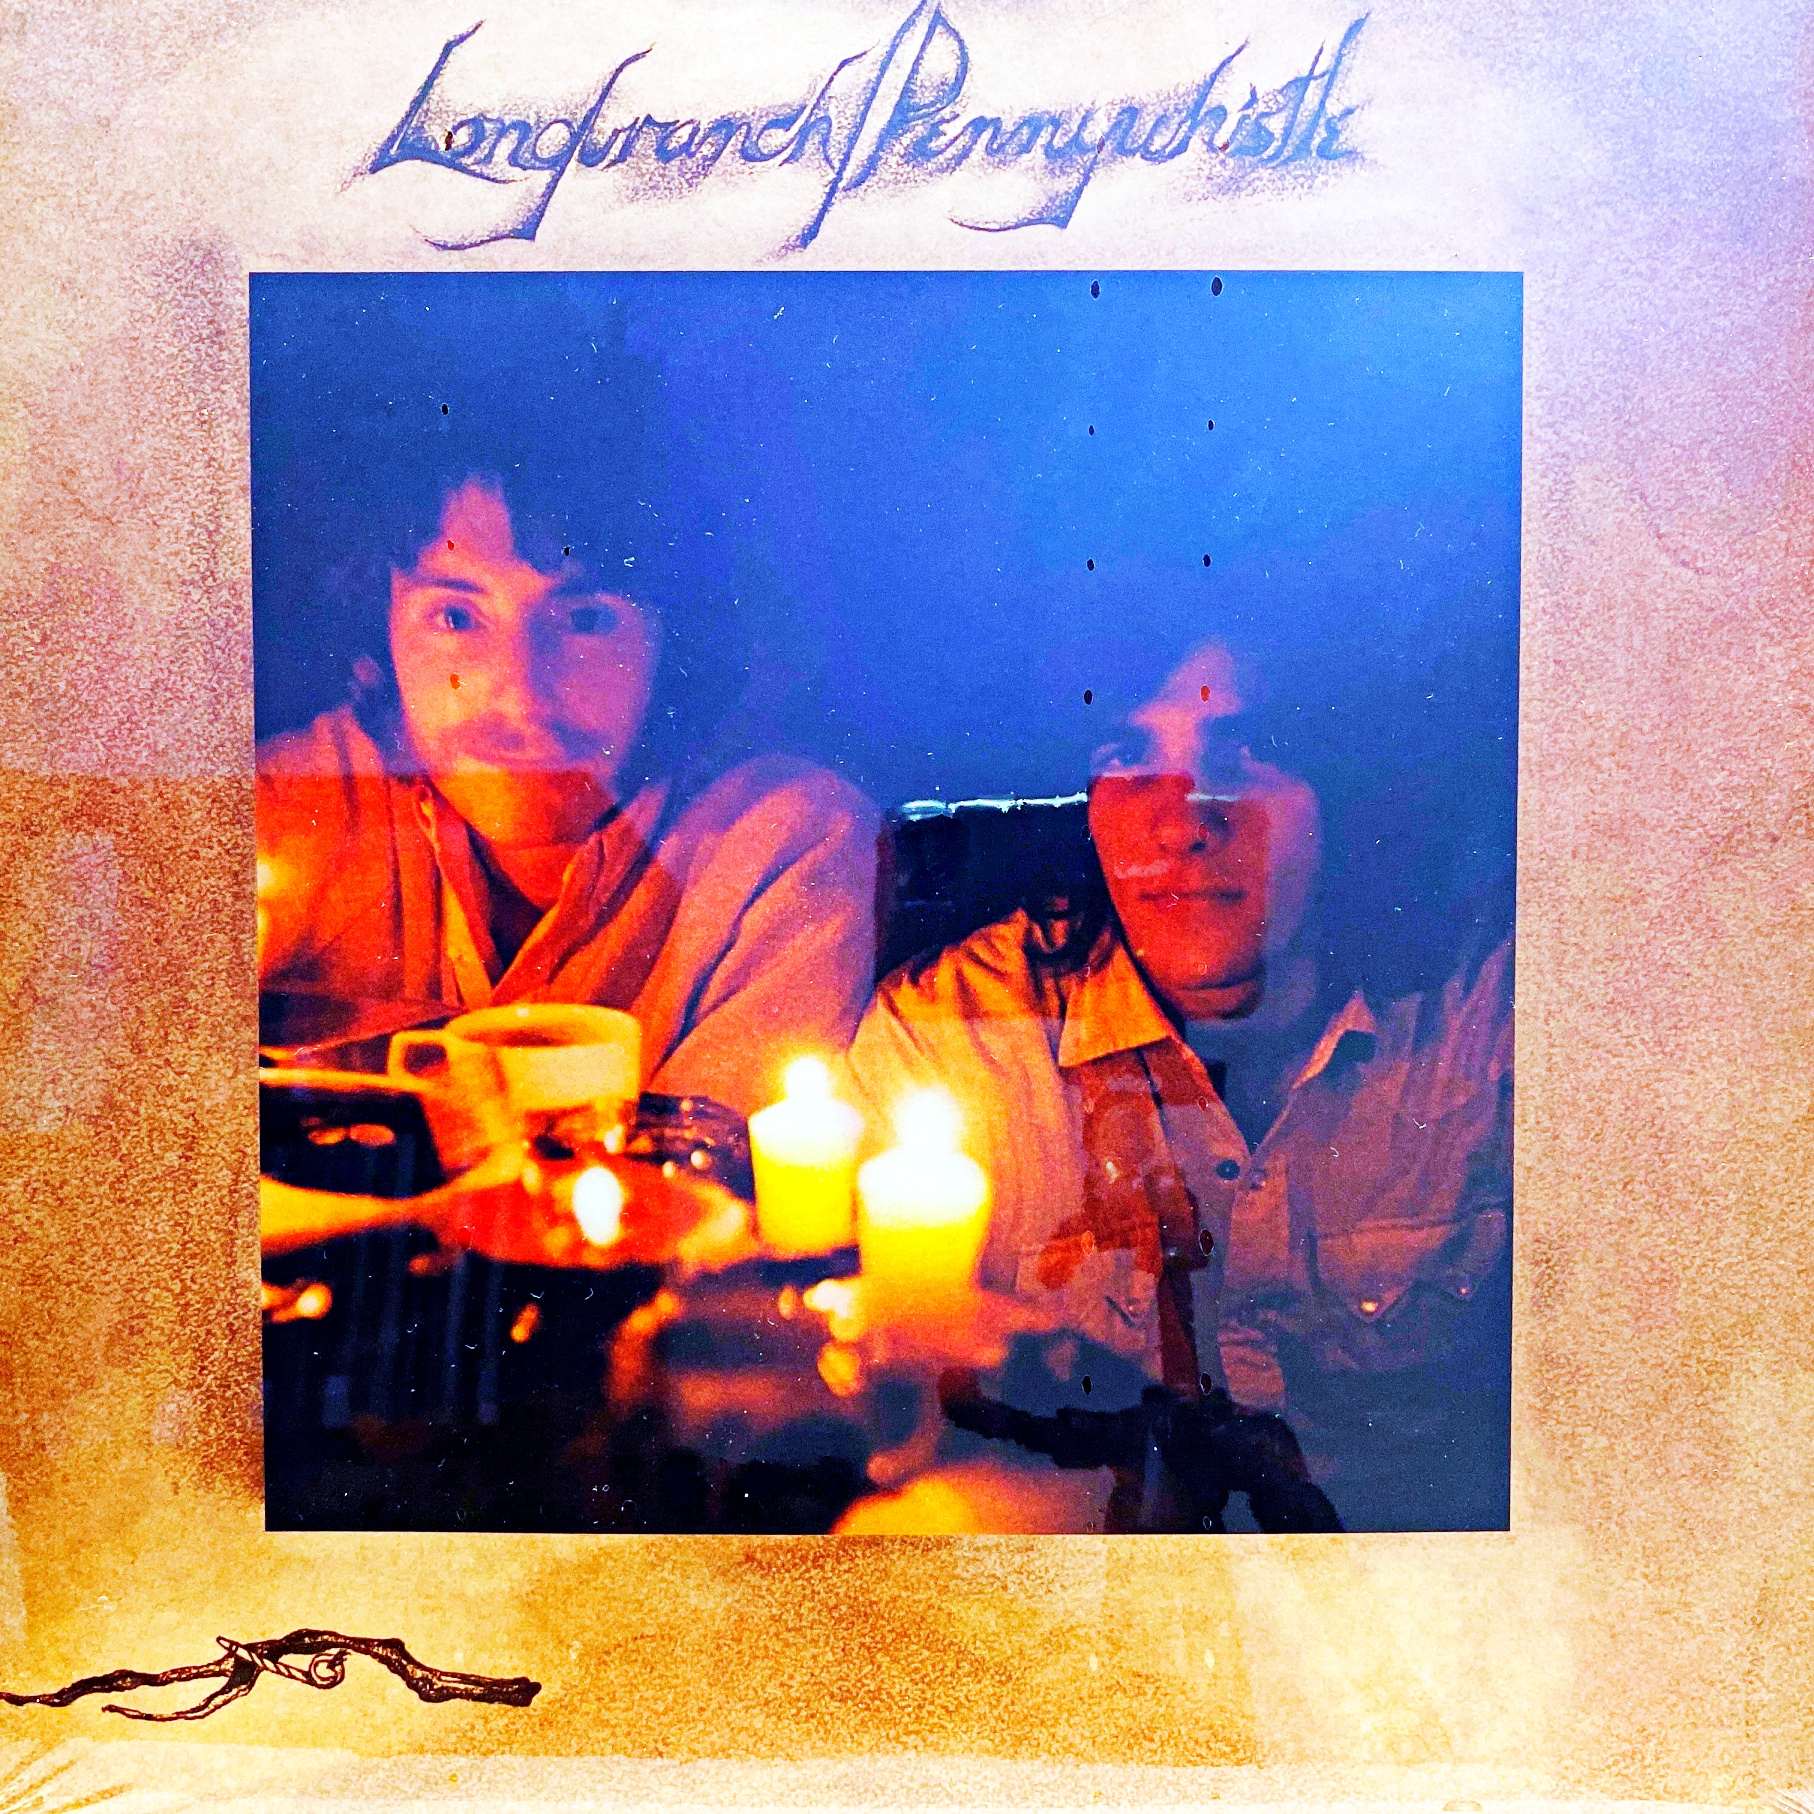 Pop, Rock - USA, UK  LP Longbranch/Pennywhistle – Longbranch